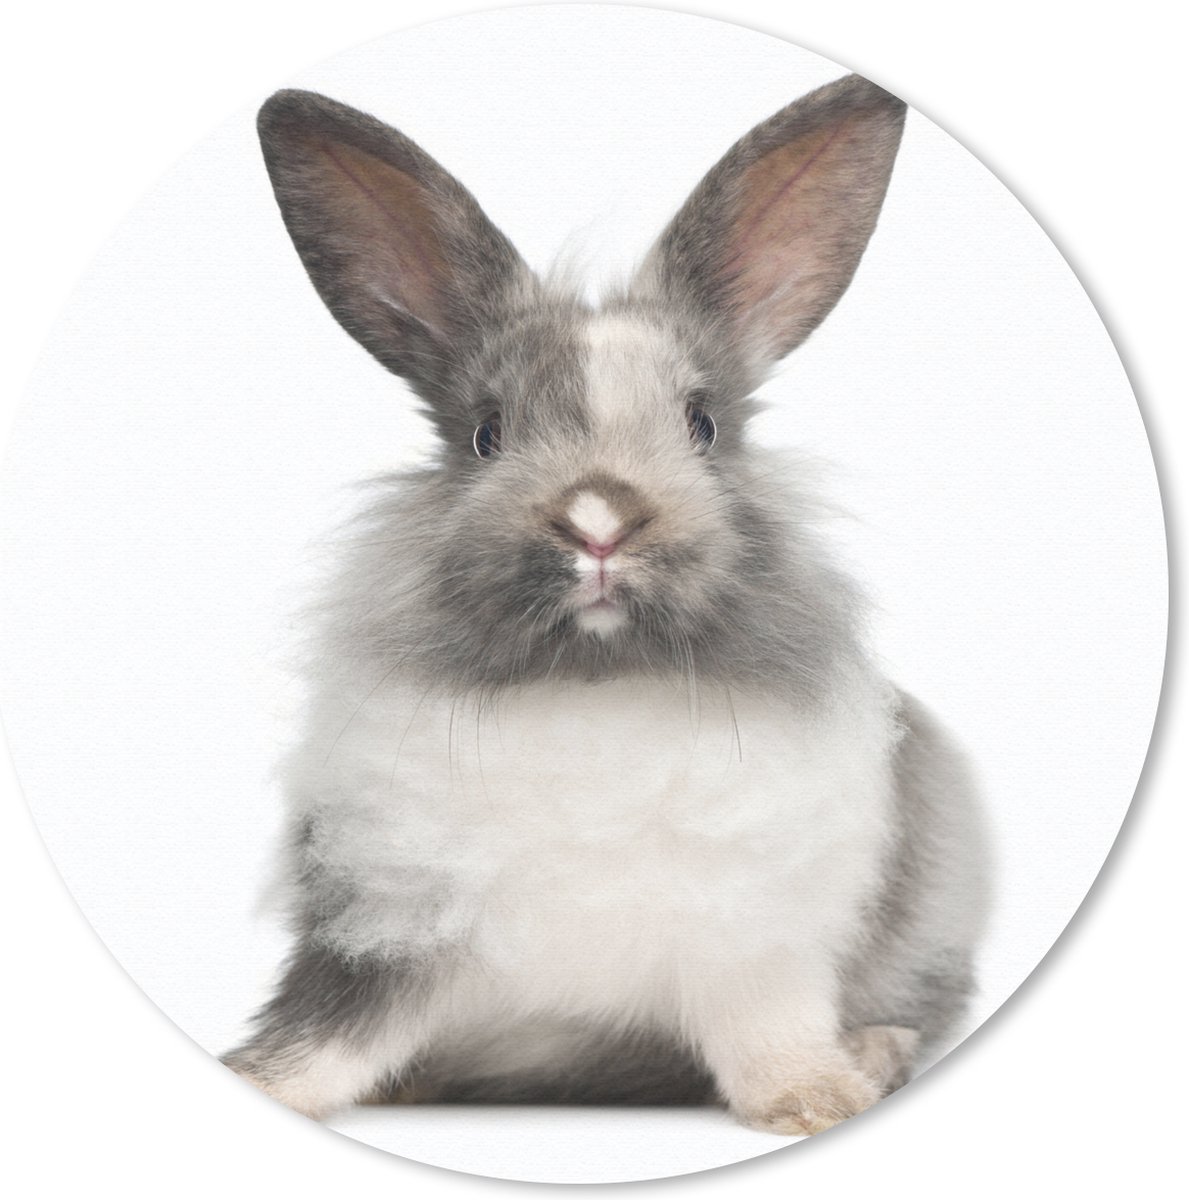 Muismat Konijnen - Zittend konijn fotoafdruk Muismat rond - 30x30 cm - Muismat met foto